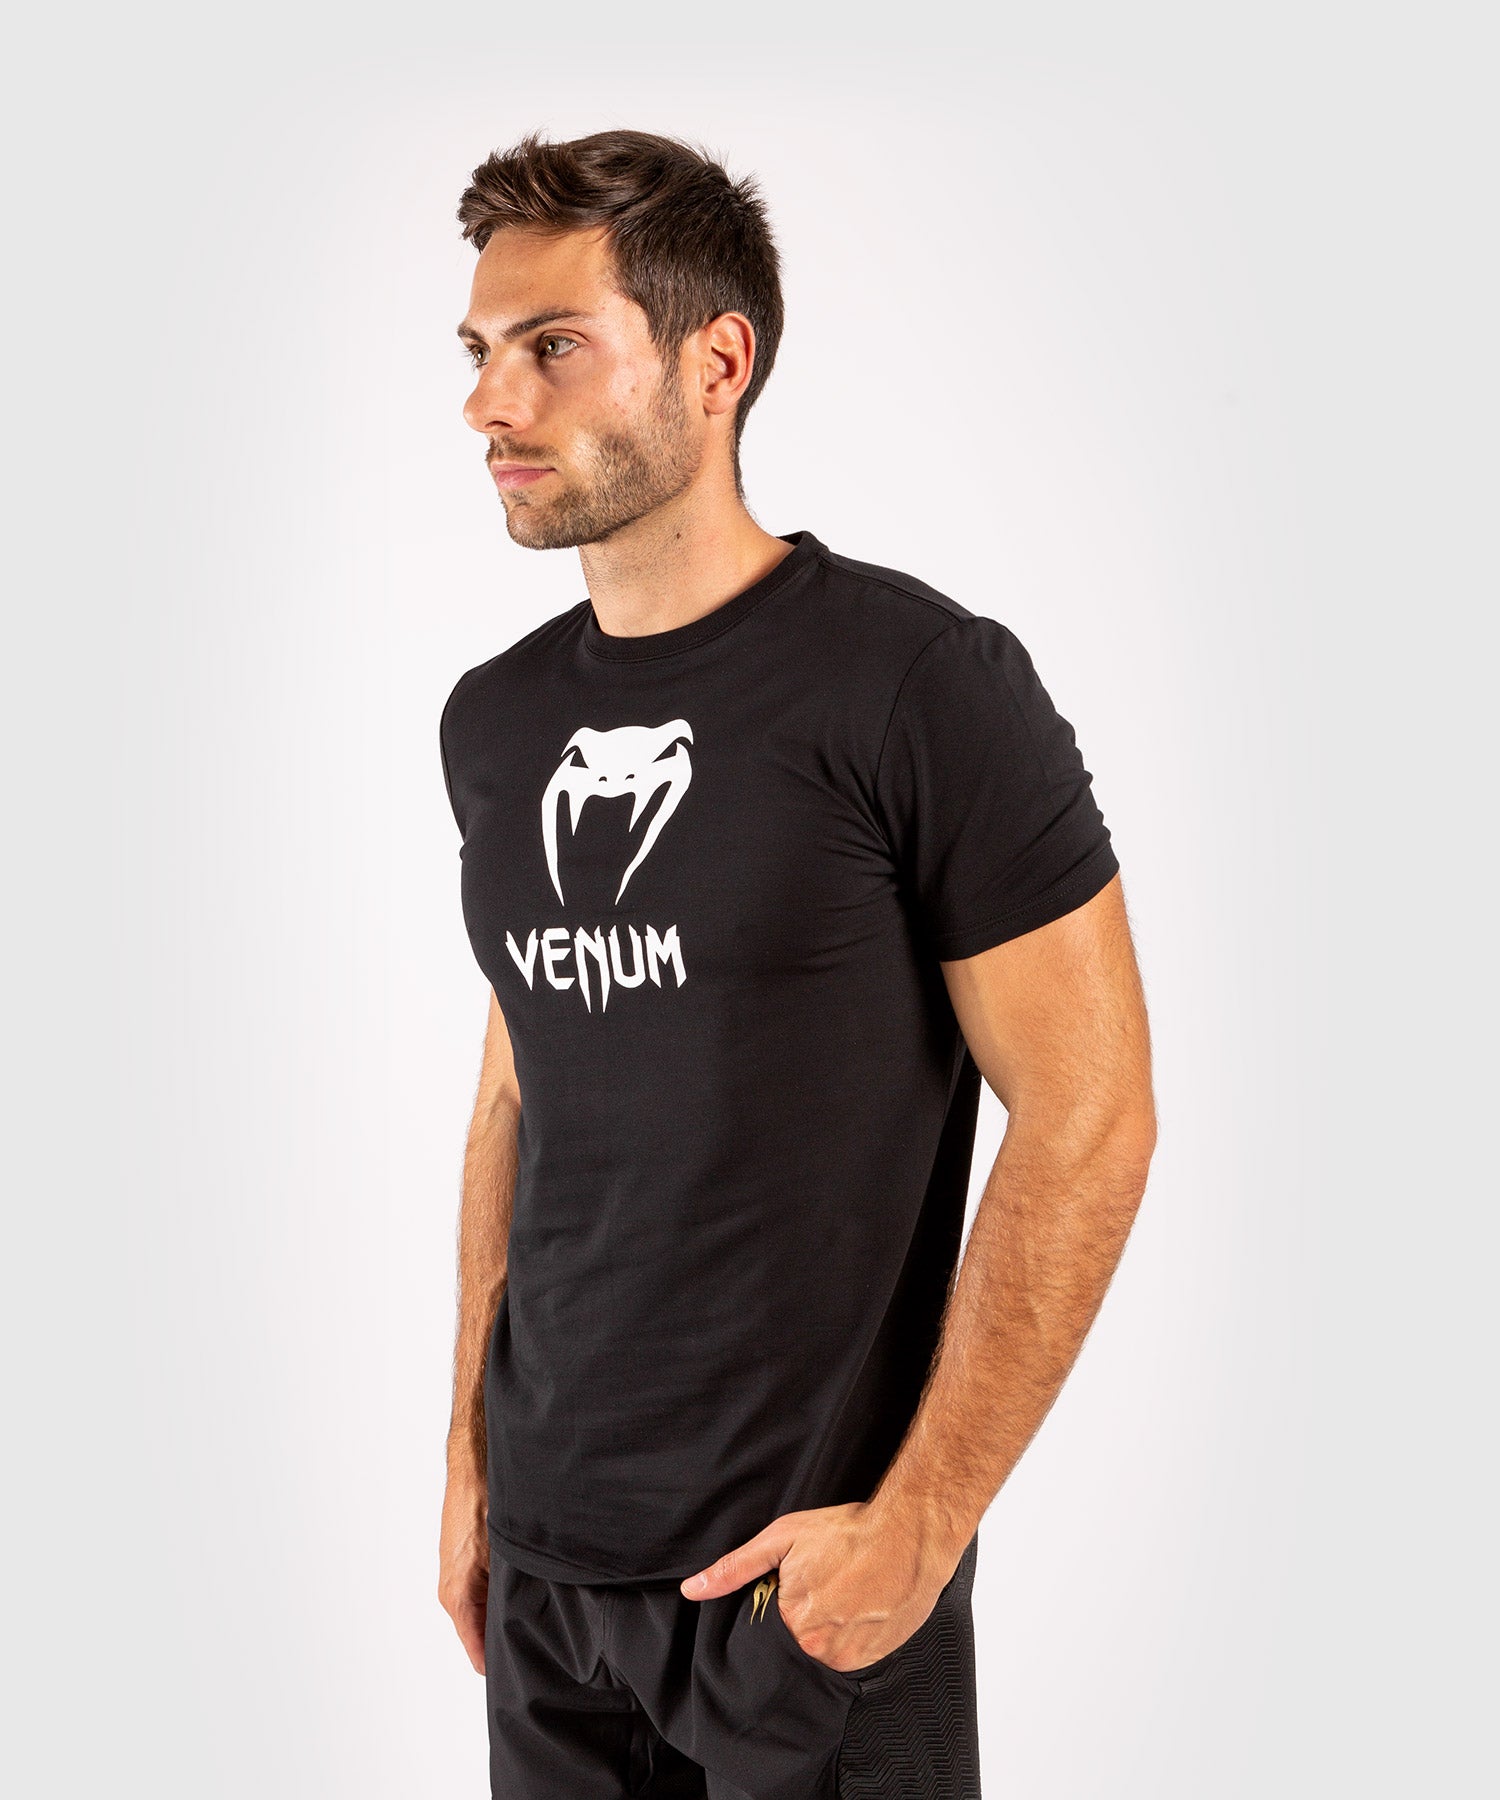 T-Shirt Venum Classic - Orange